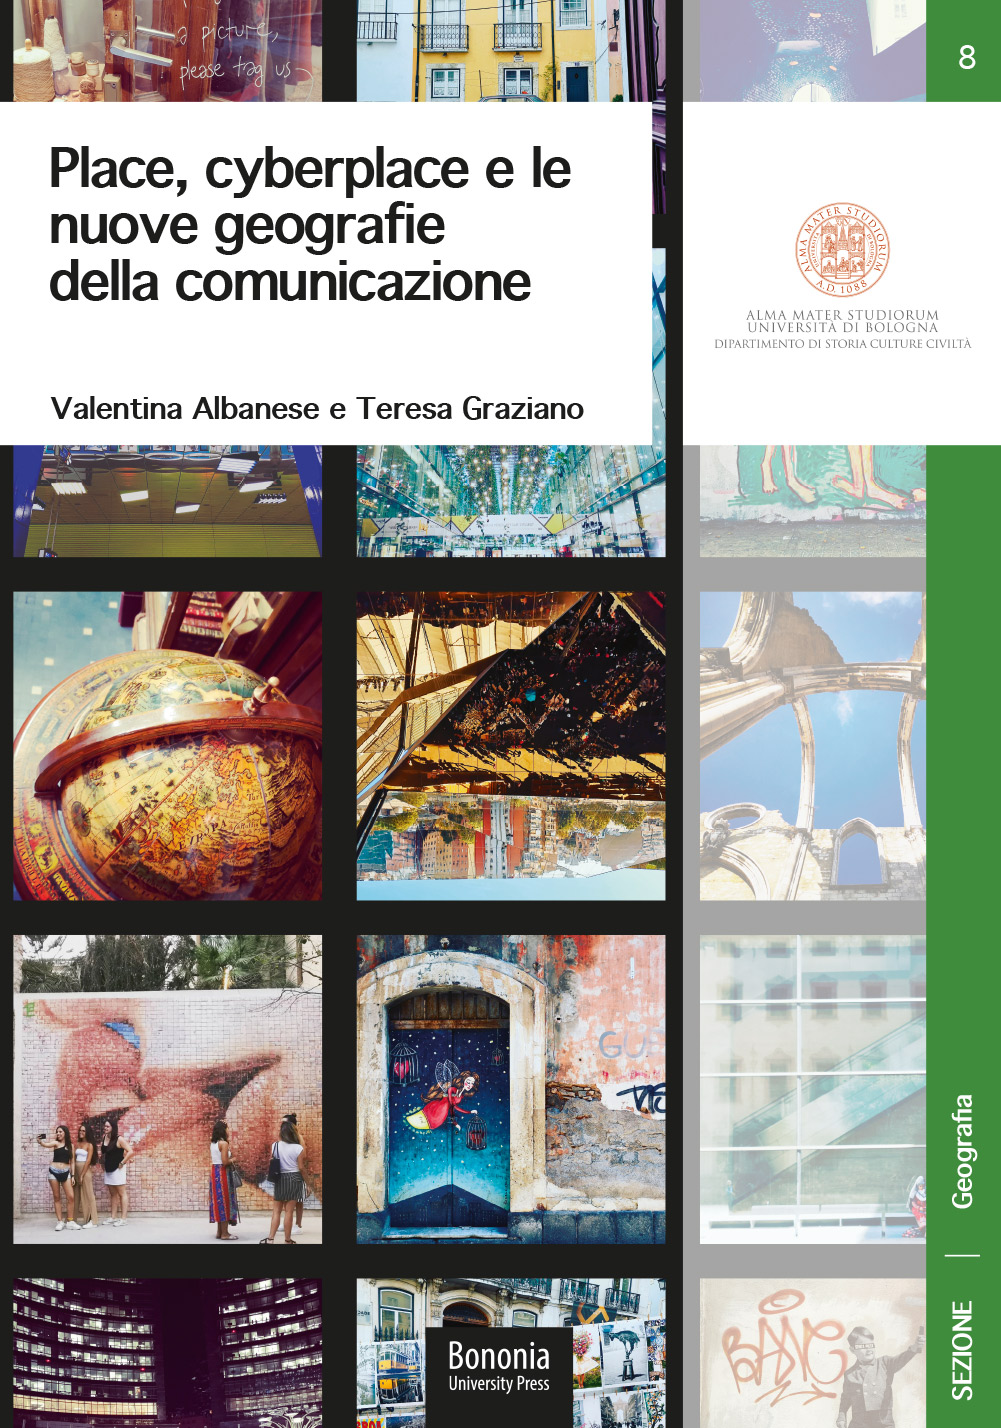 Place, cyberplace e le nuove geografie della comunicazione - Bologna University Press